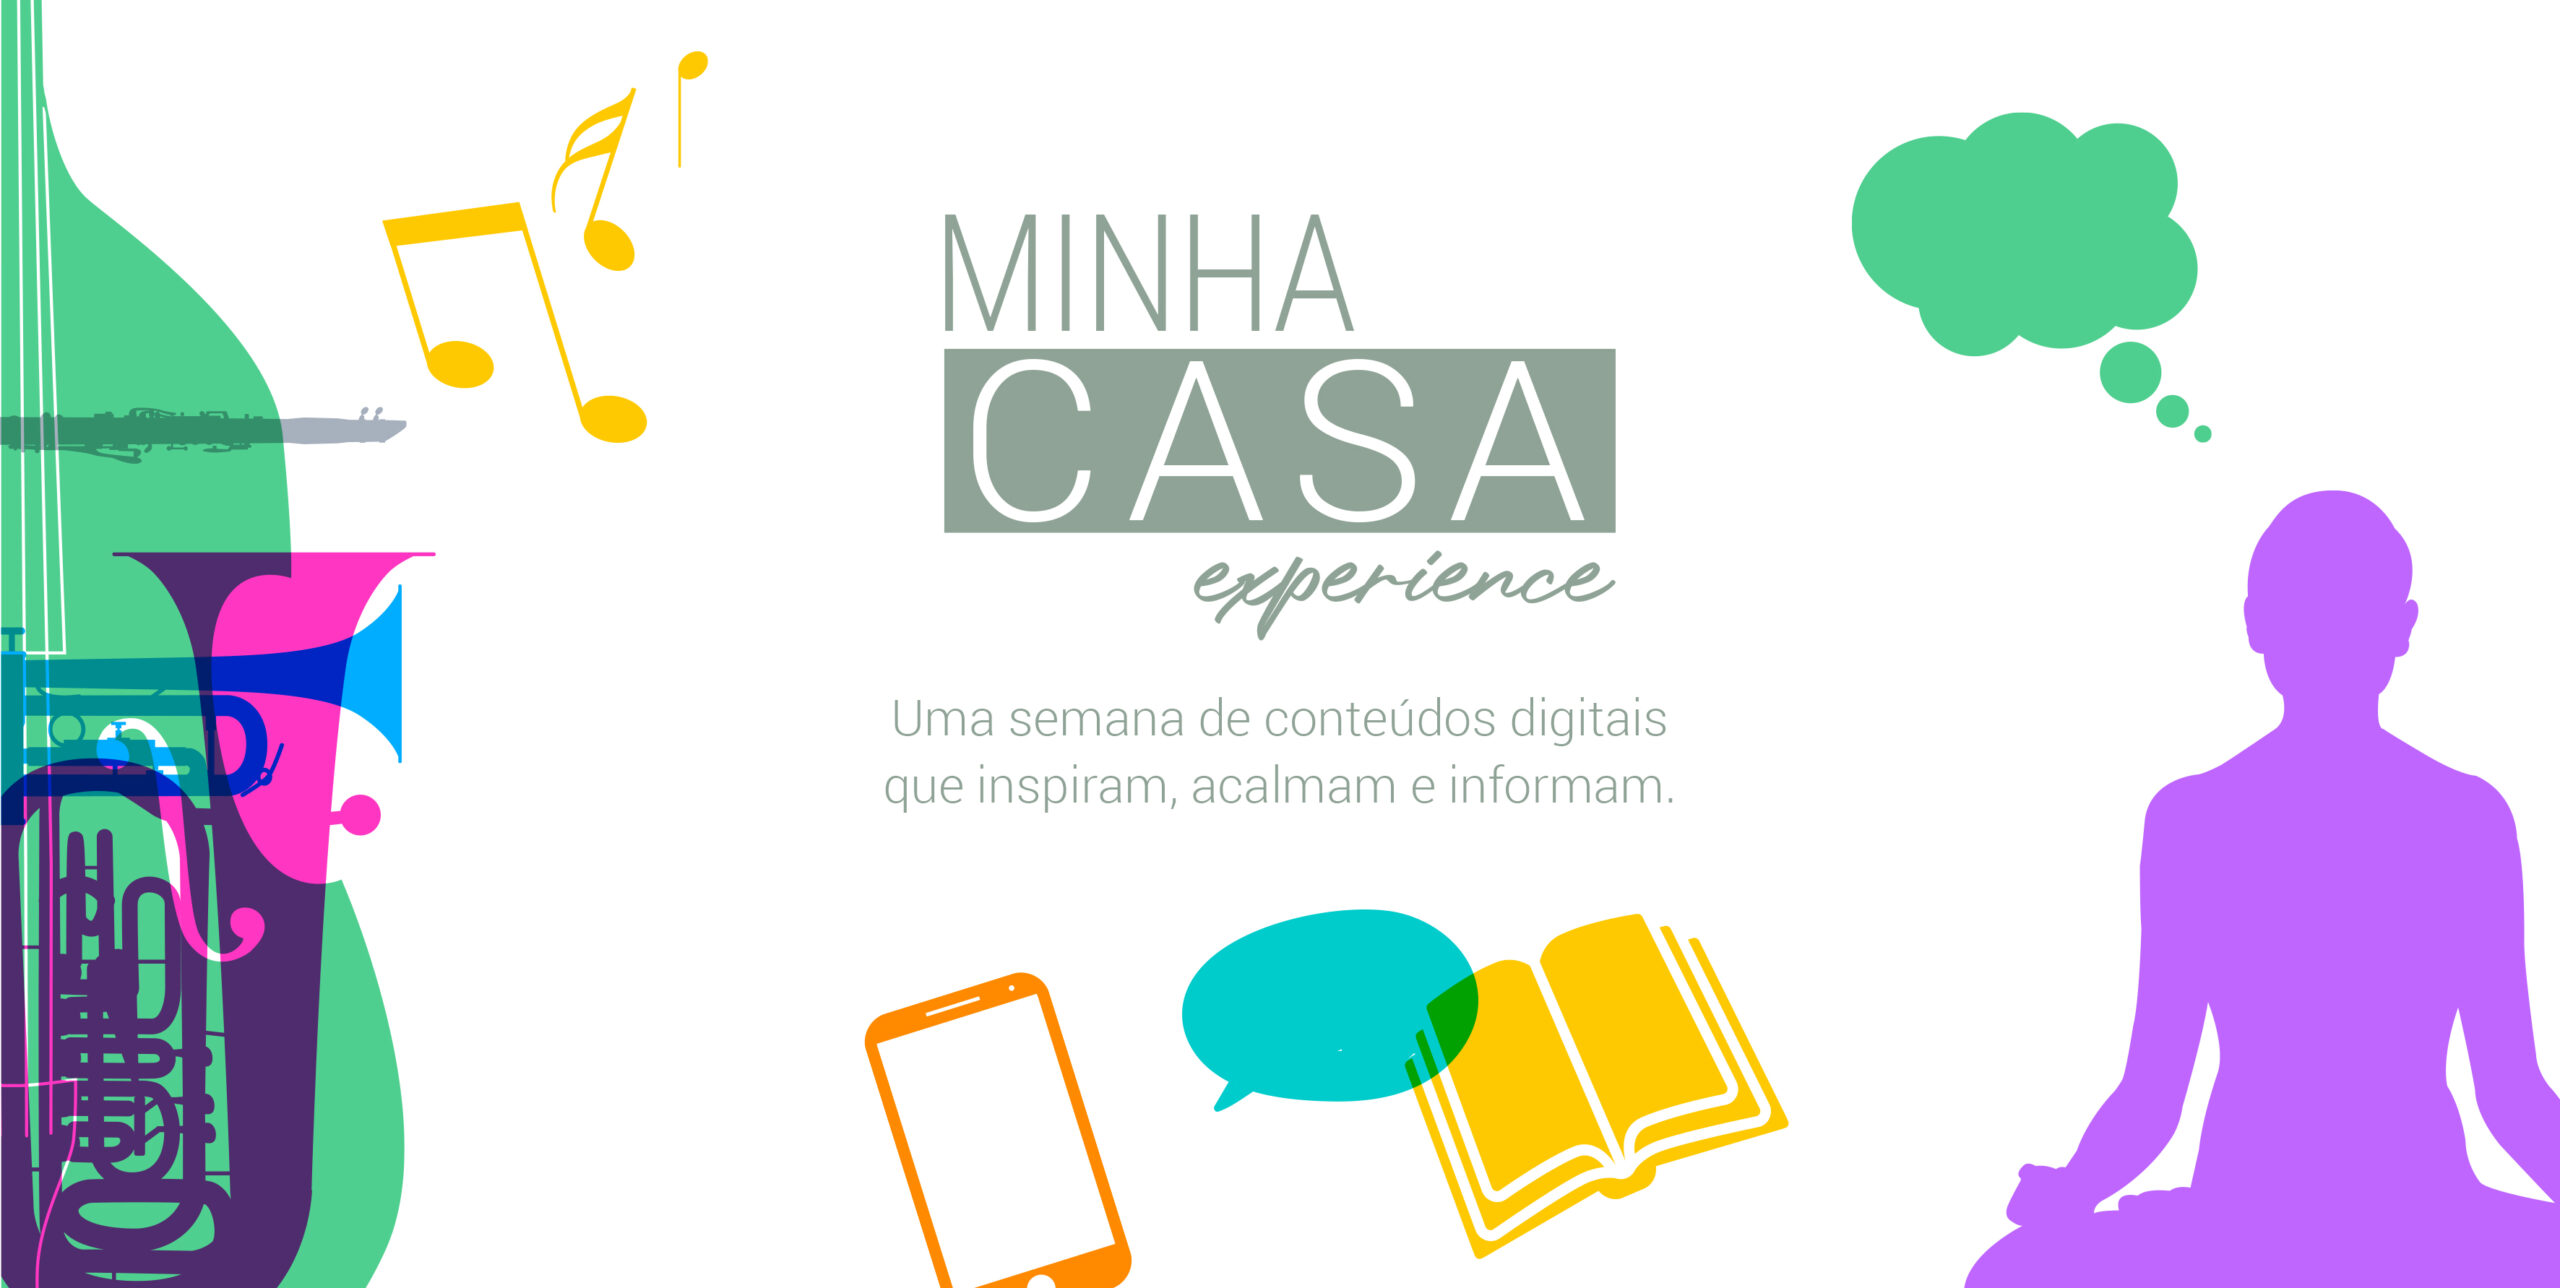 Site MT promove o #MinhaCasaExperience para lidar com o isolamento social